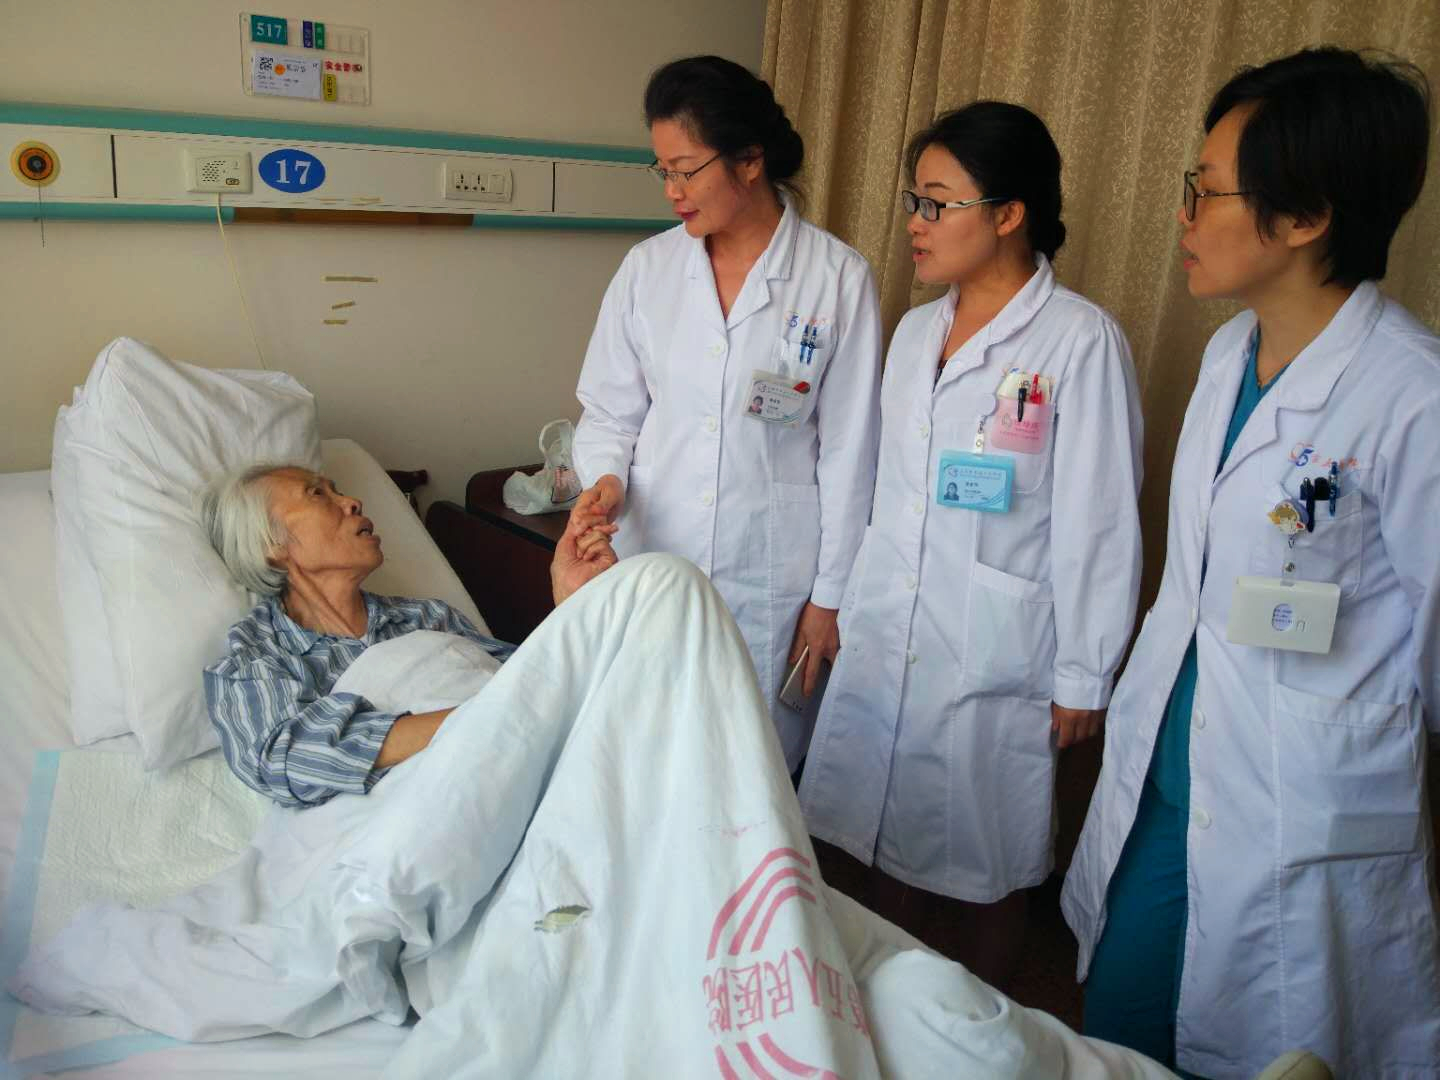 术后查房，曾被子宫内膜病变折磨的奶奶紧紧抓住陈亚萍的手表示感谢.jpg